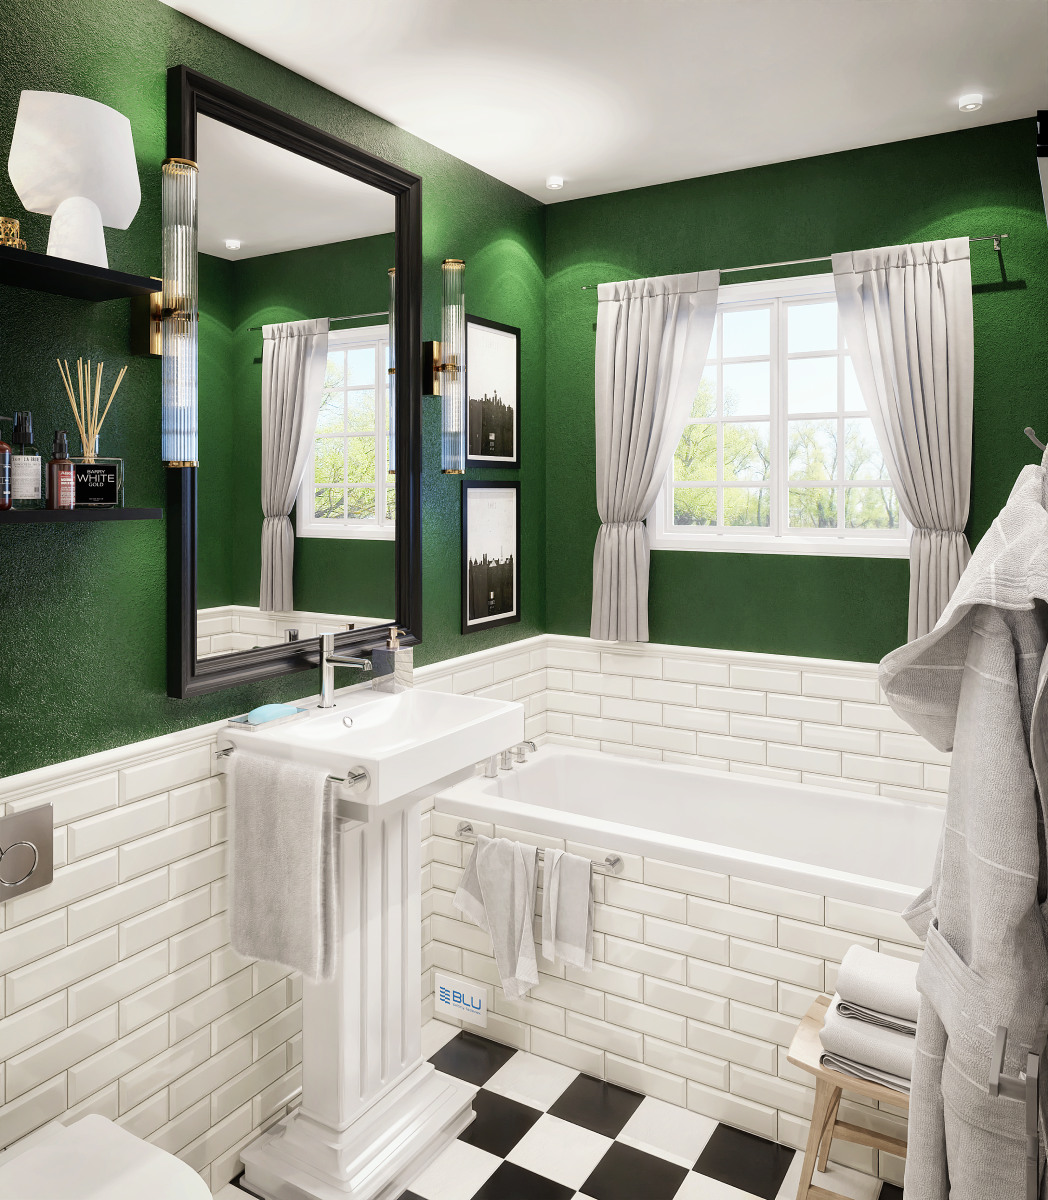 Biało - zielona łazienka w stylu vintage.